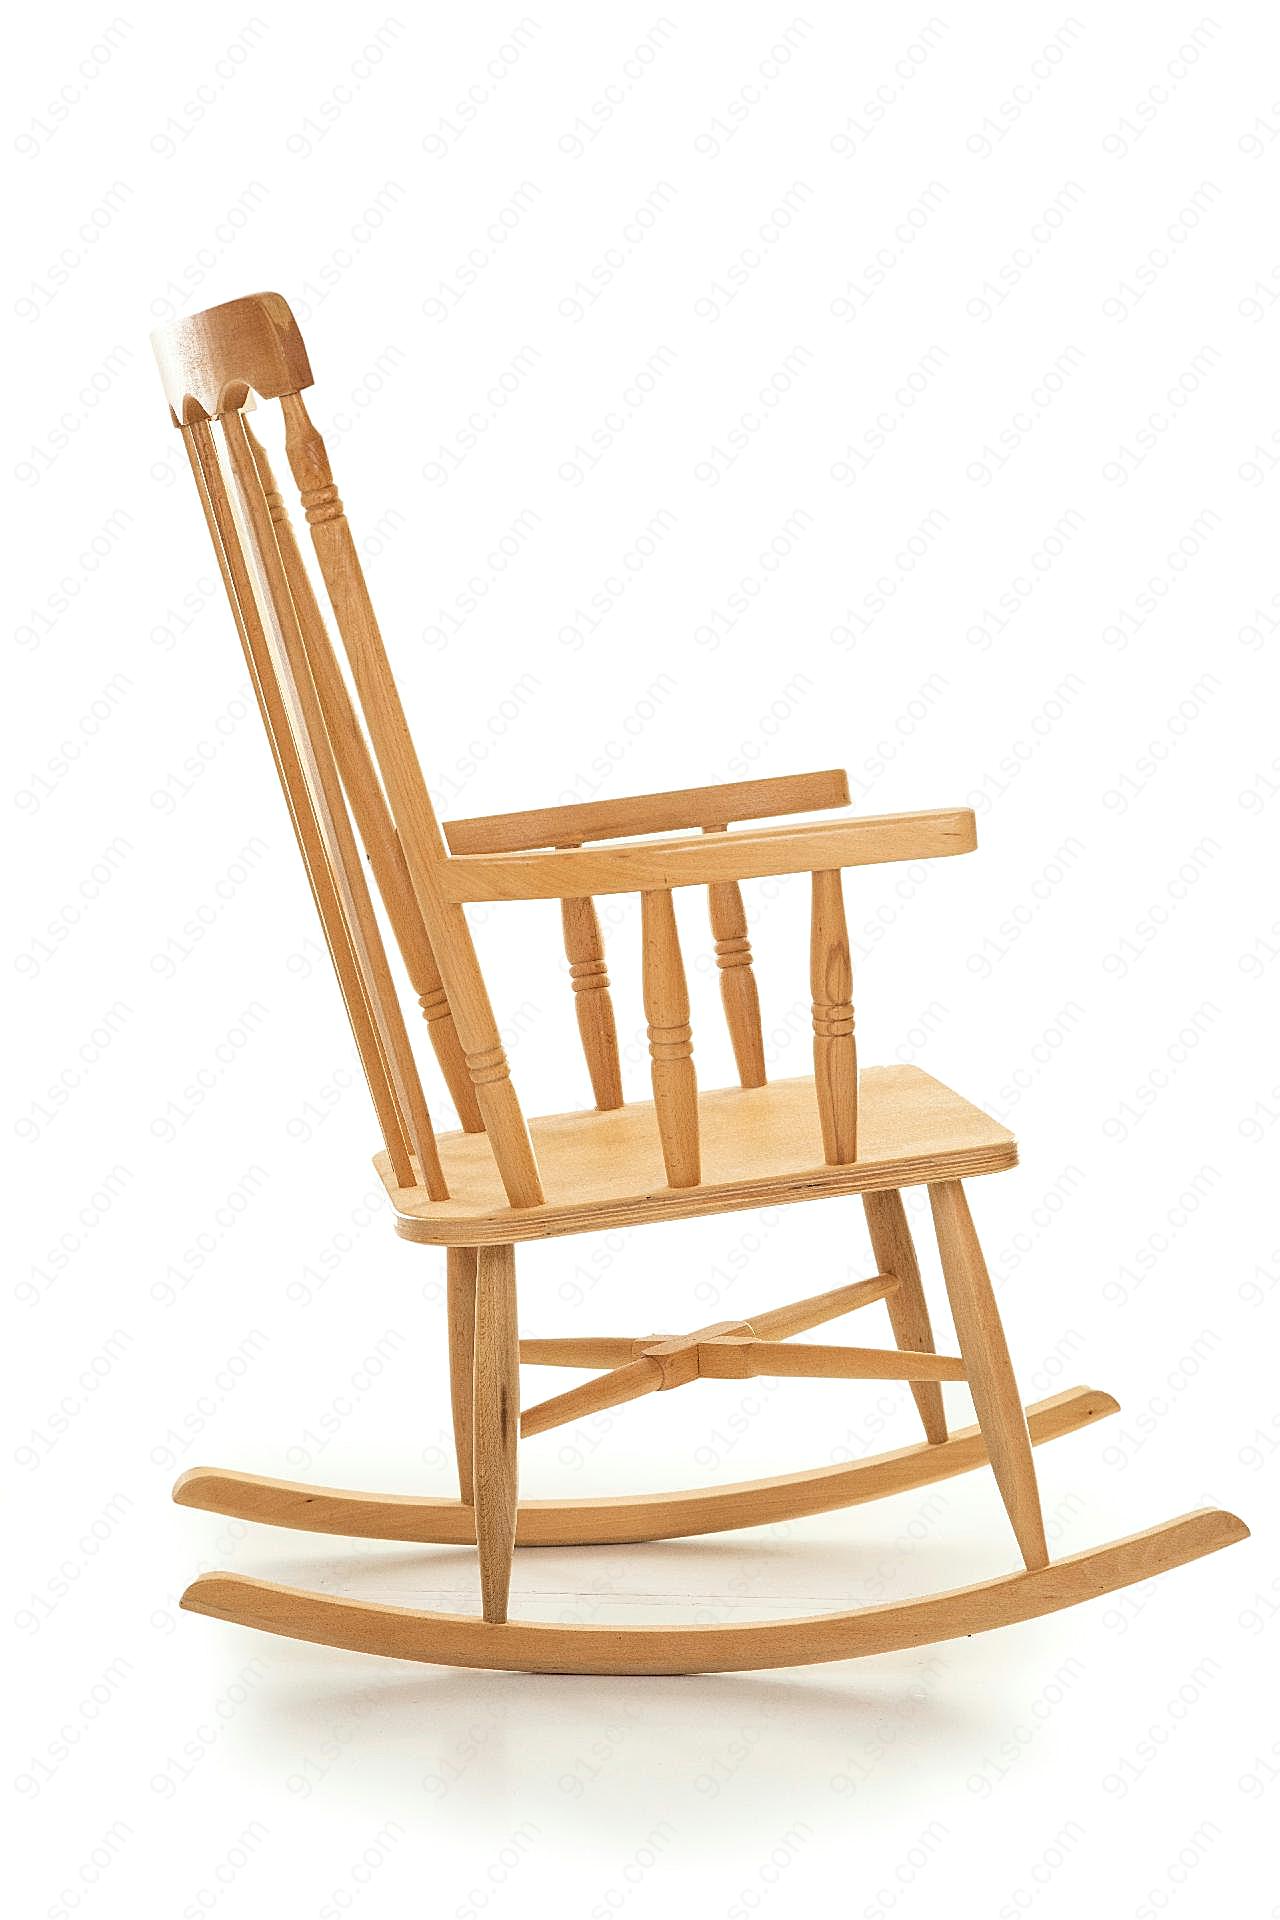 木摇椅图片高清